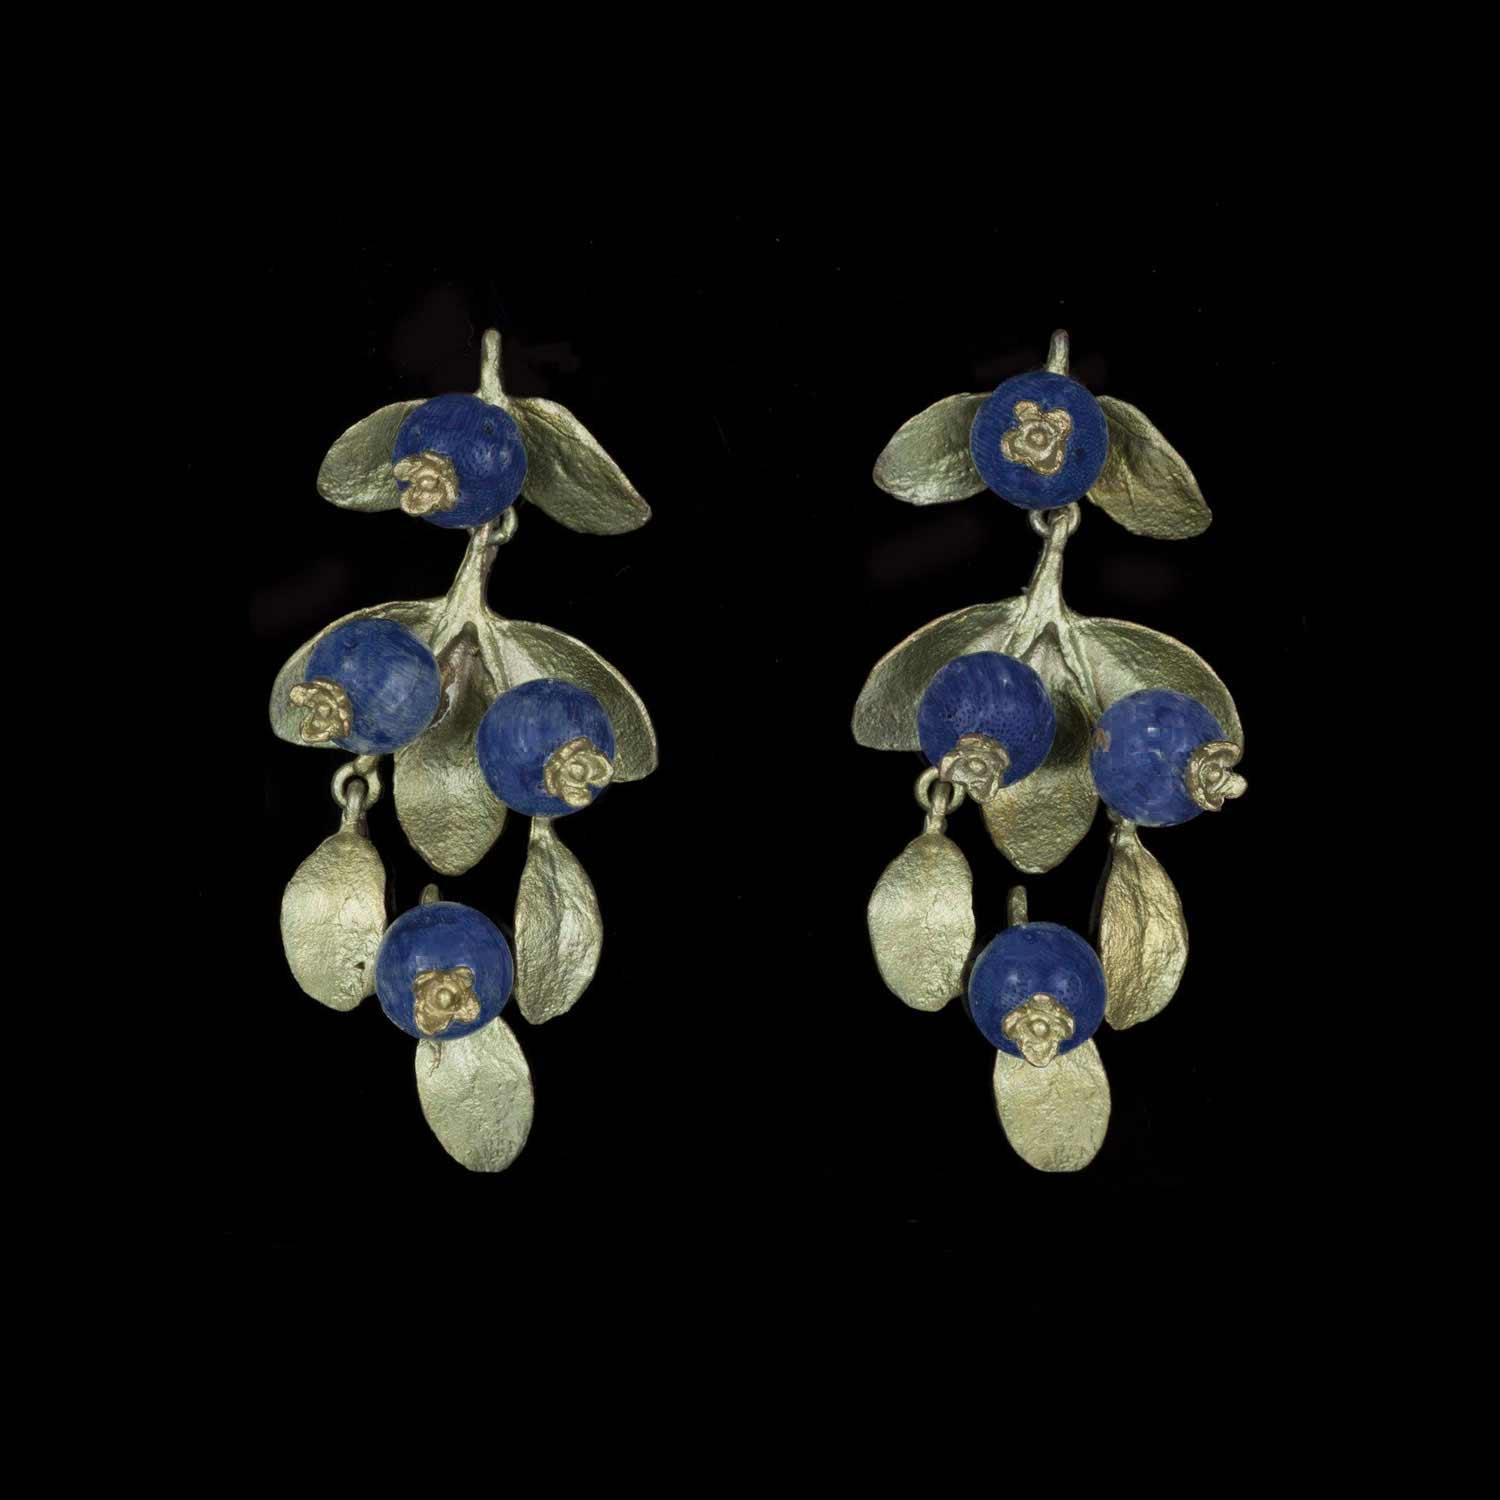 Blueberry Earrings - Drop